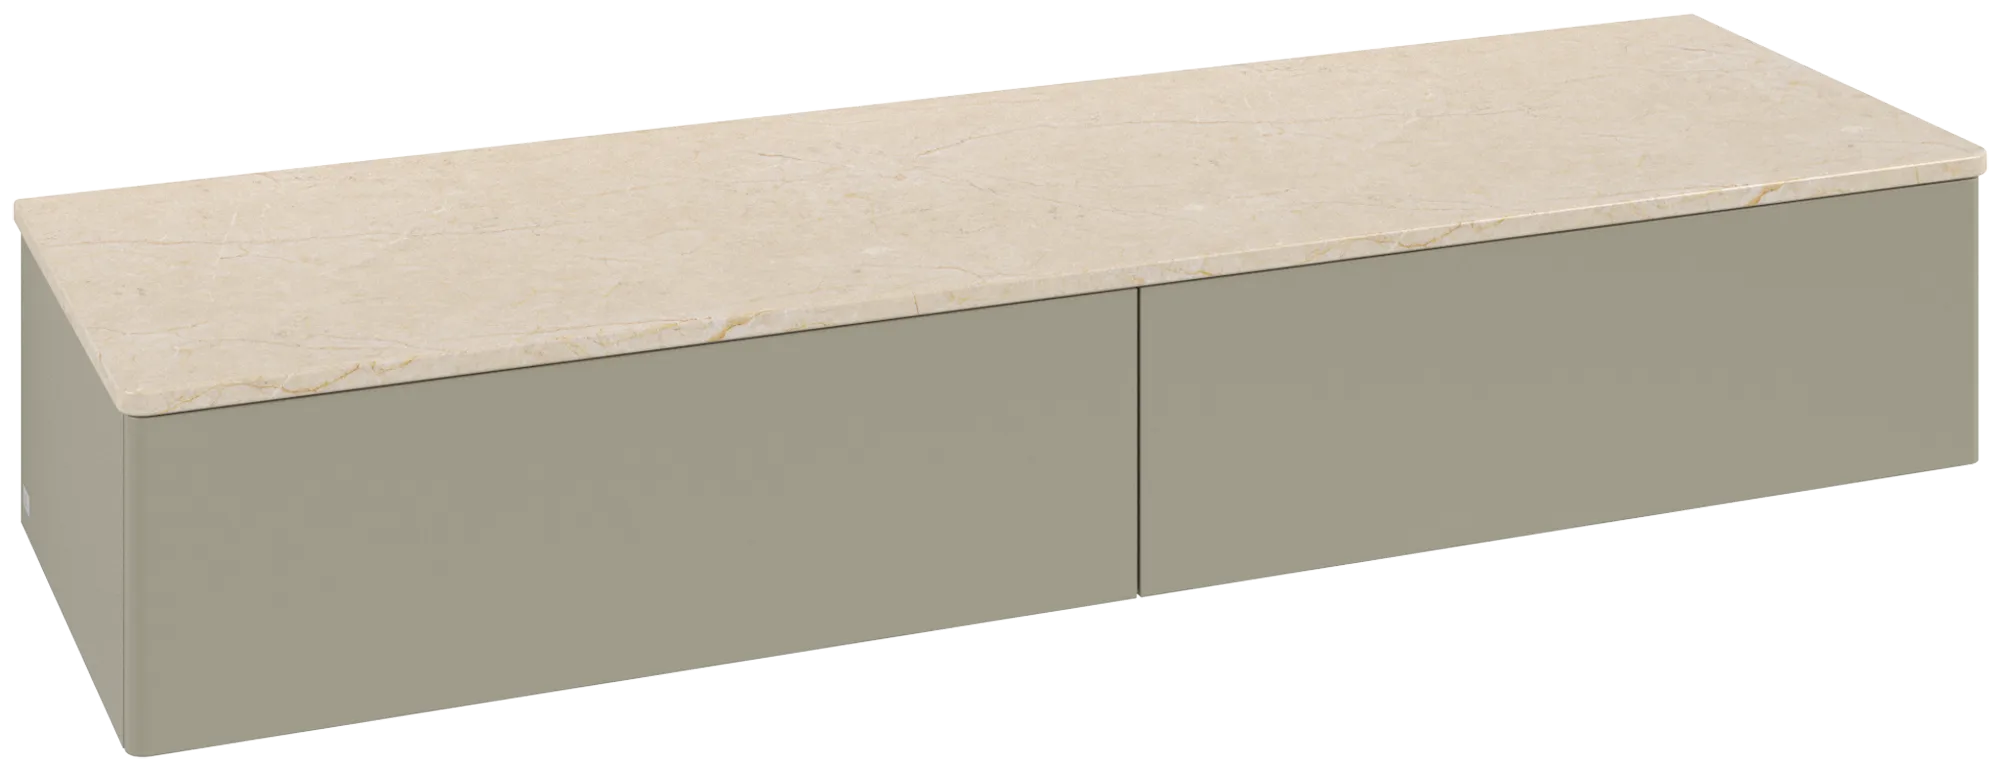 Bild von VILLEROY BOCH Antao Sideboard, 2 Auszüge, 1600 x 268 x 500 mm, Front ohne Struktur, Stone Grey Matt Lacquer / Botticino #K42003HK